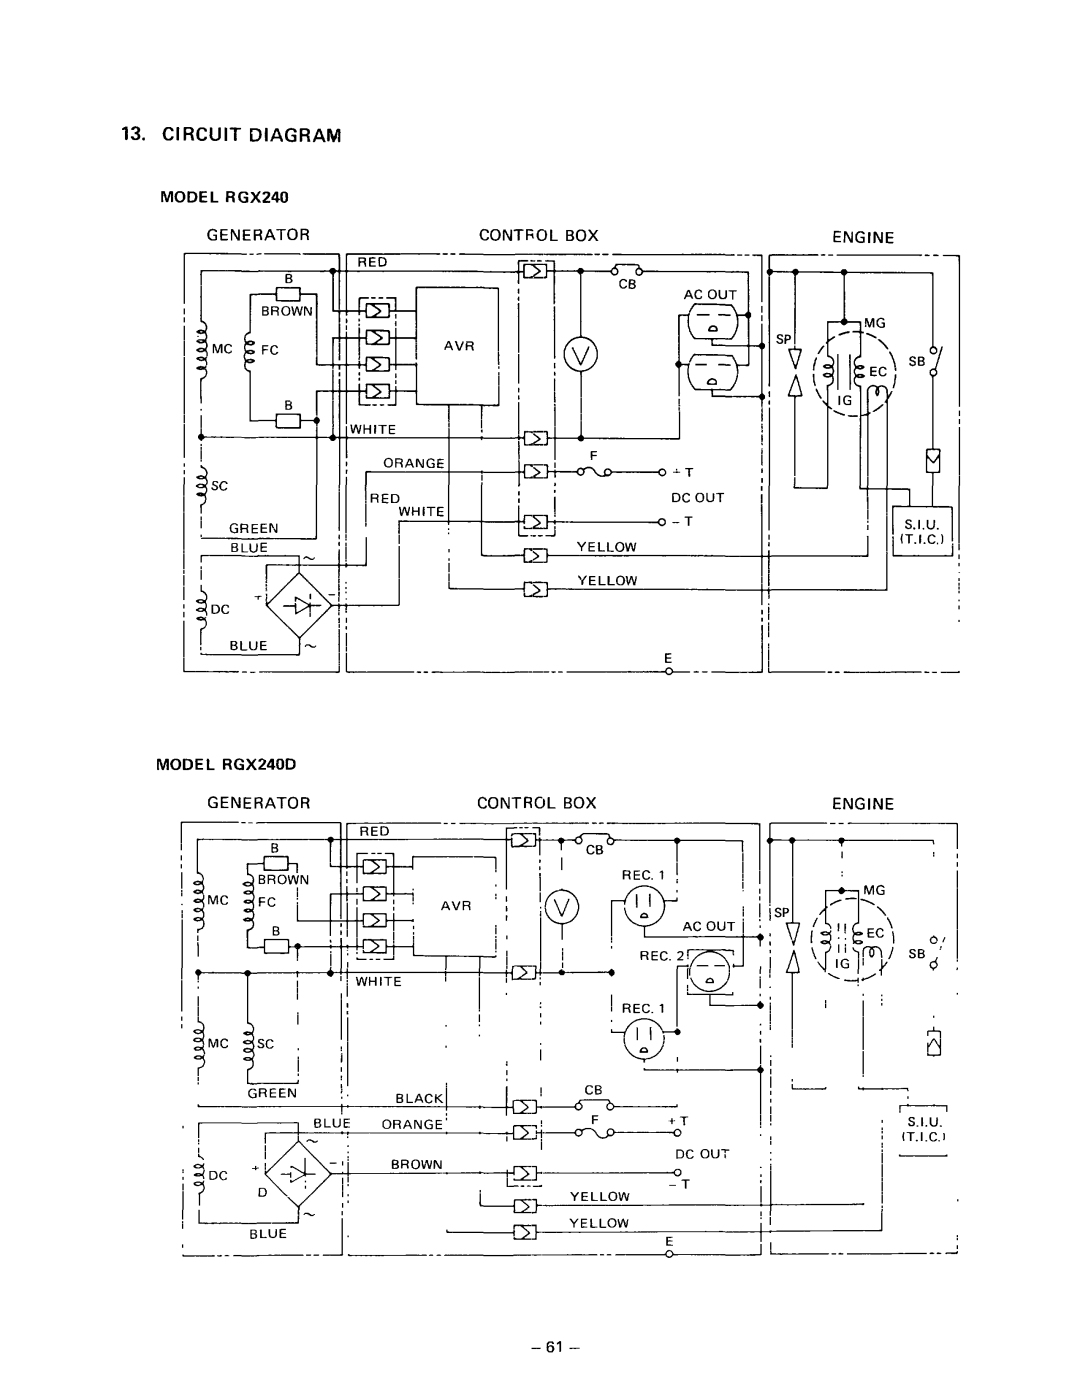 Subaru Robin Power Products RGX180, RGX240D manual I I L I l-r jj II j 